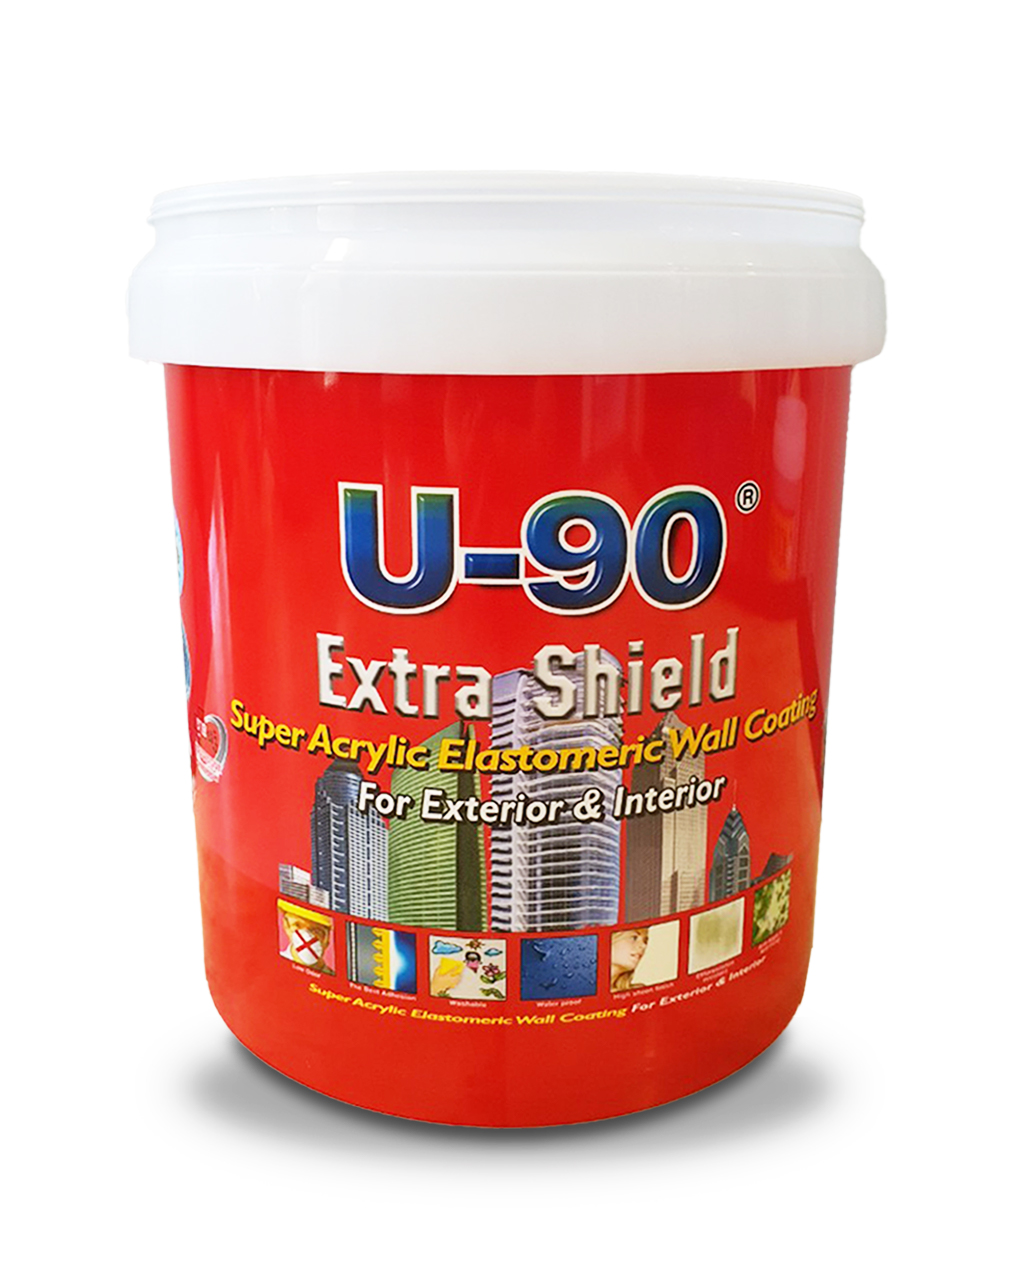 Thùng sơn U-90 Extra Shield